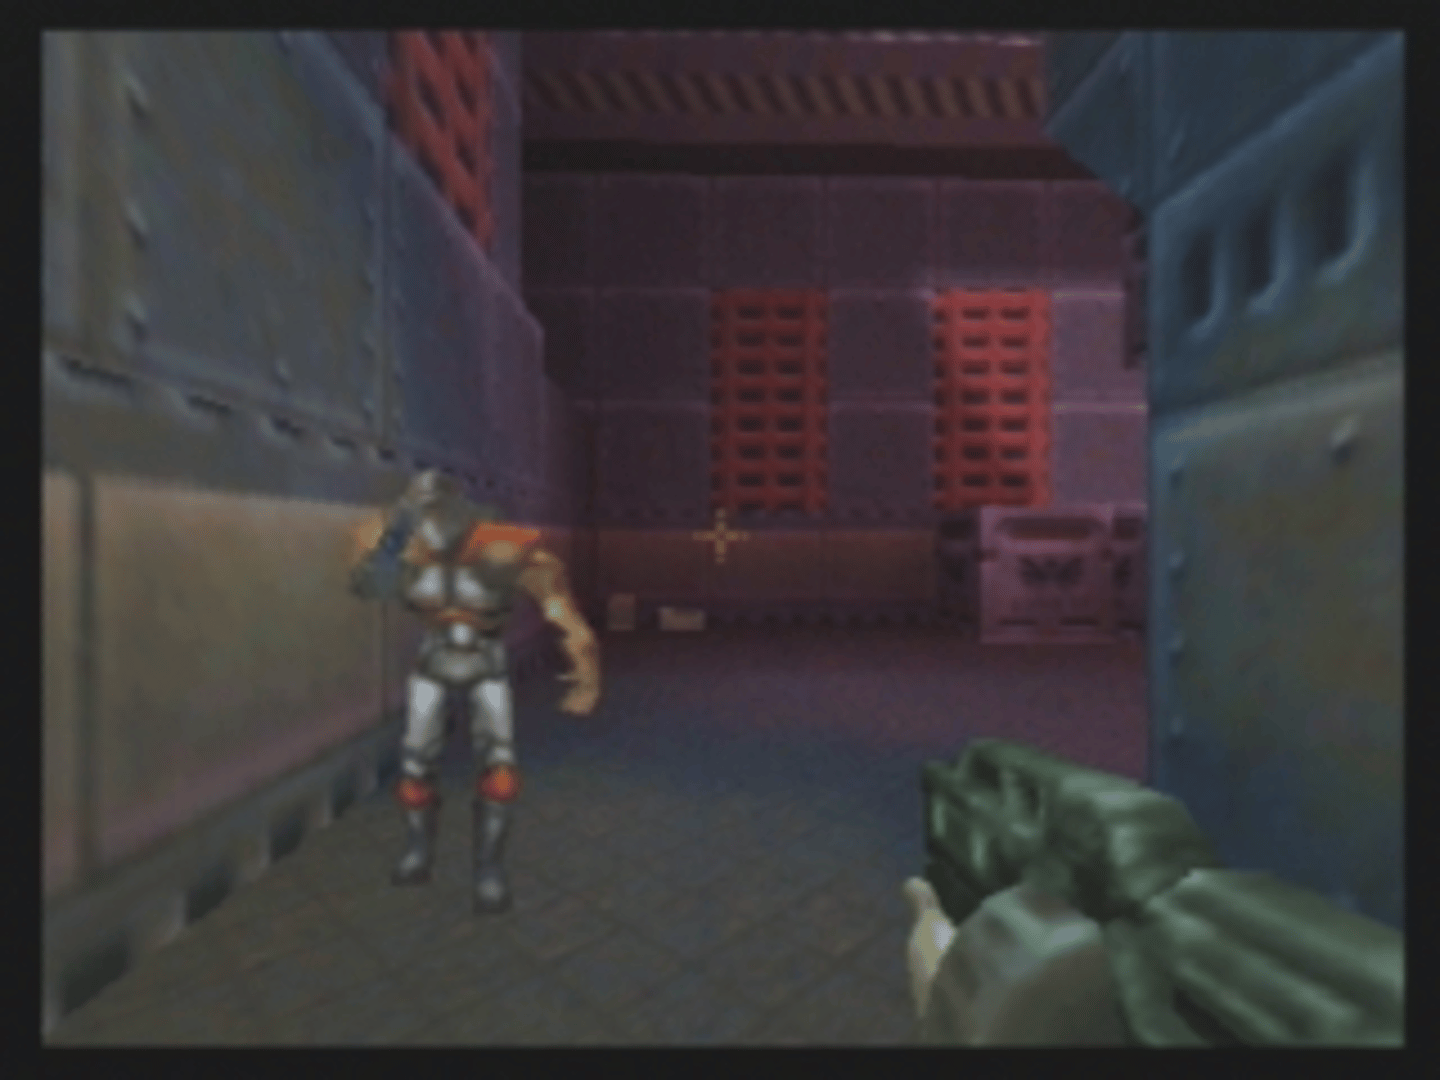 Quake II screenshot